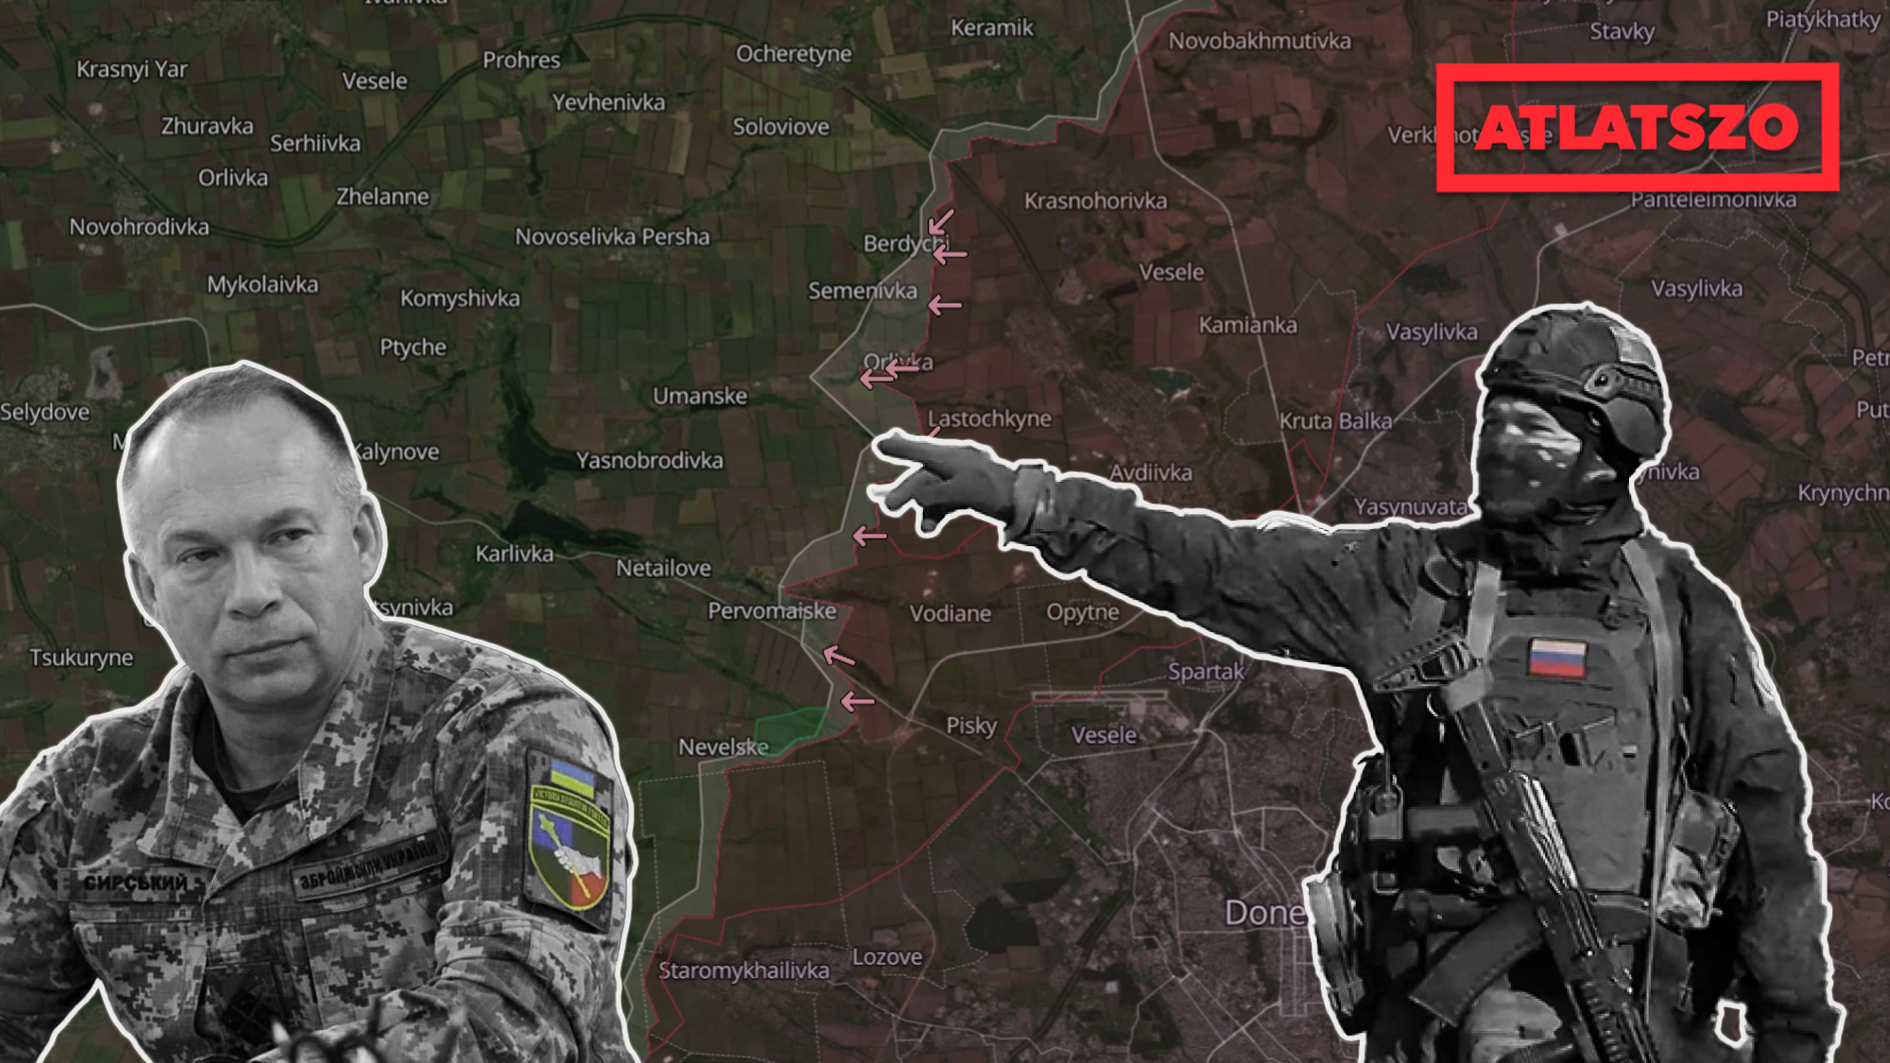 Háború Ukrajnában – ez történt februárban | atlatszo.hu